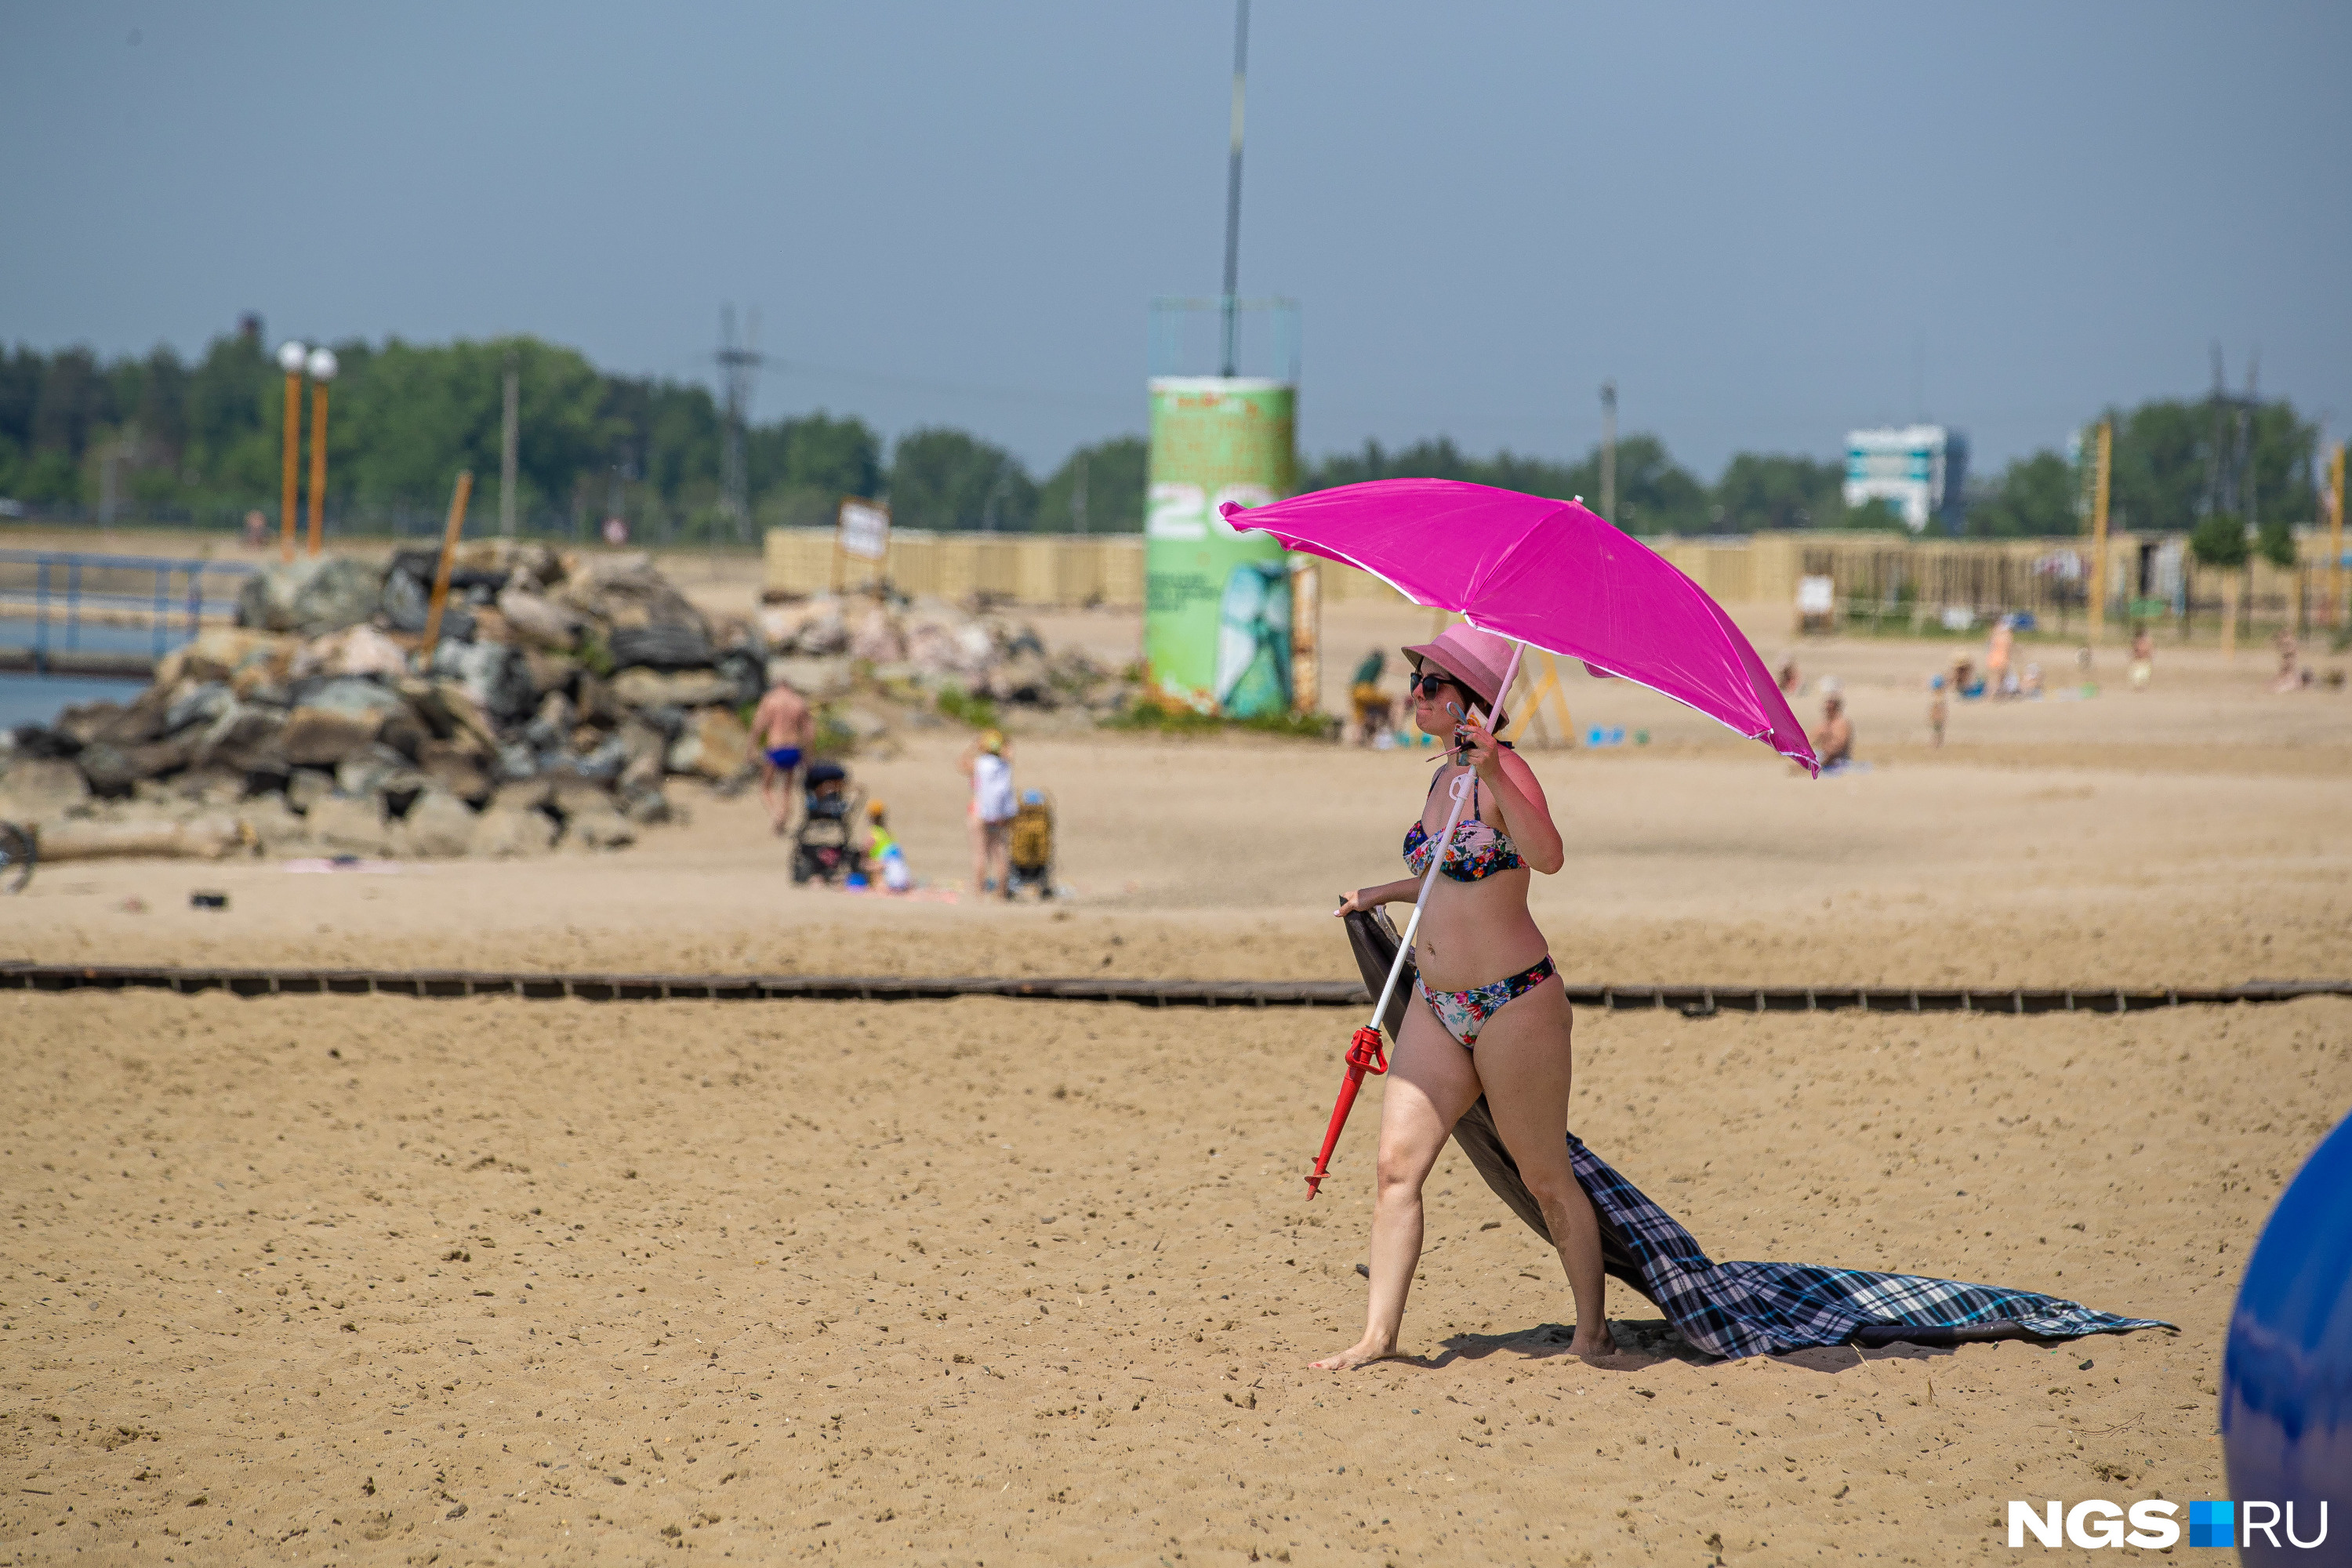 Яркий пляжный зонт, покрывало и шляпка — всё, что нужно для идеального отдыха